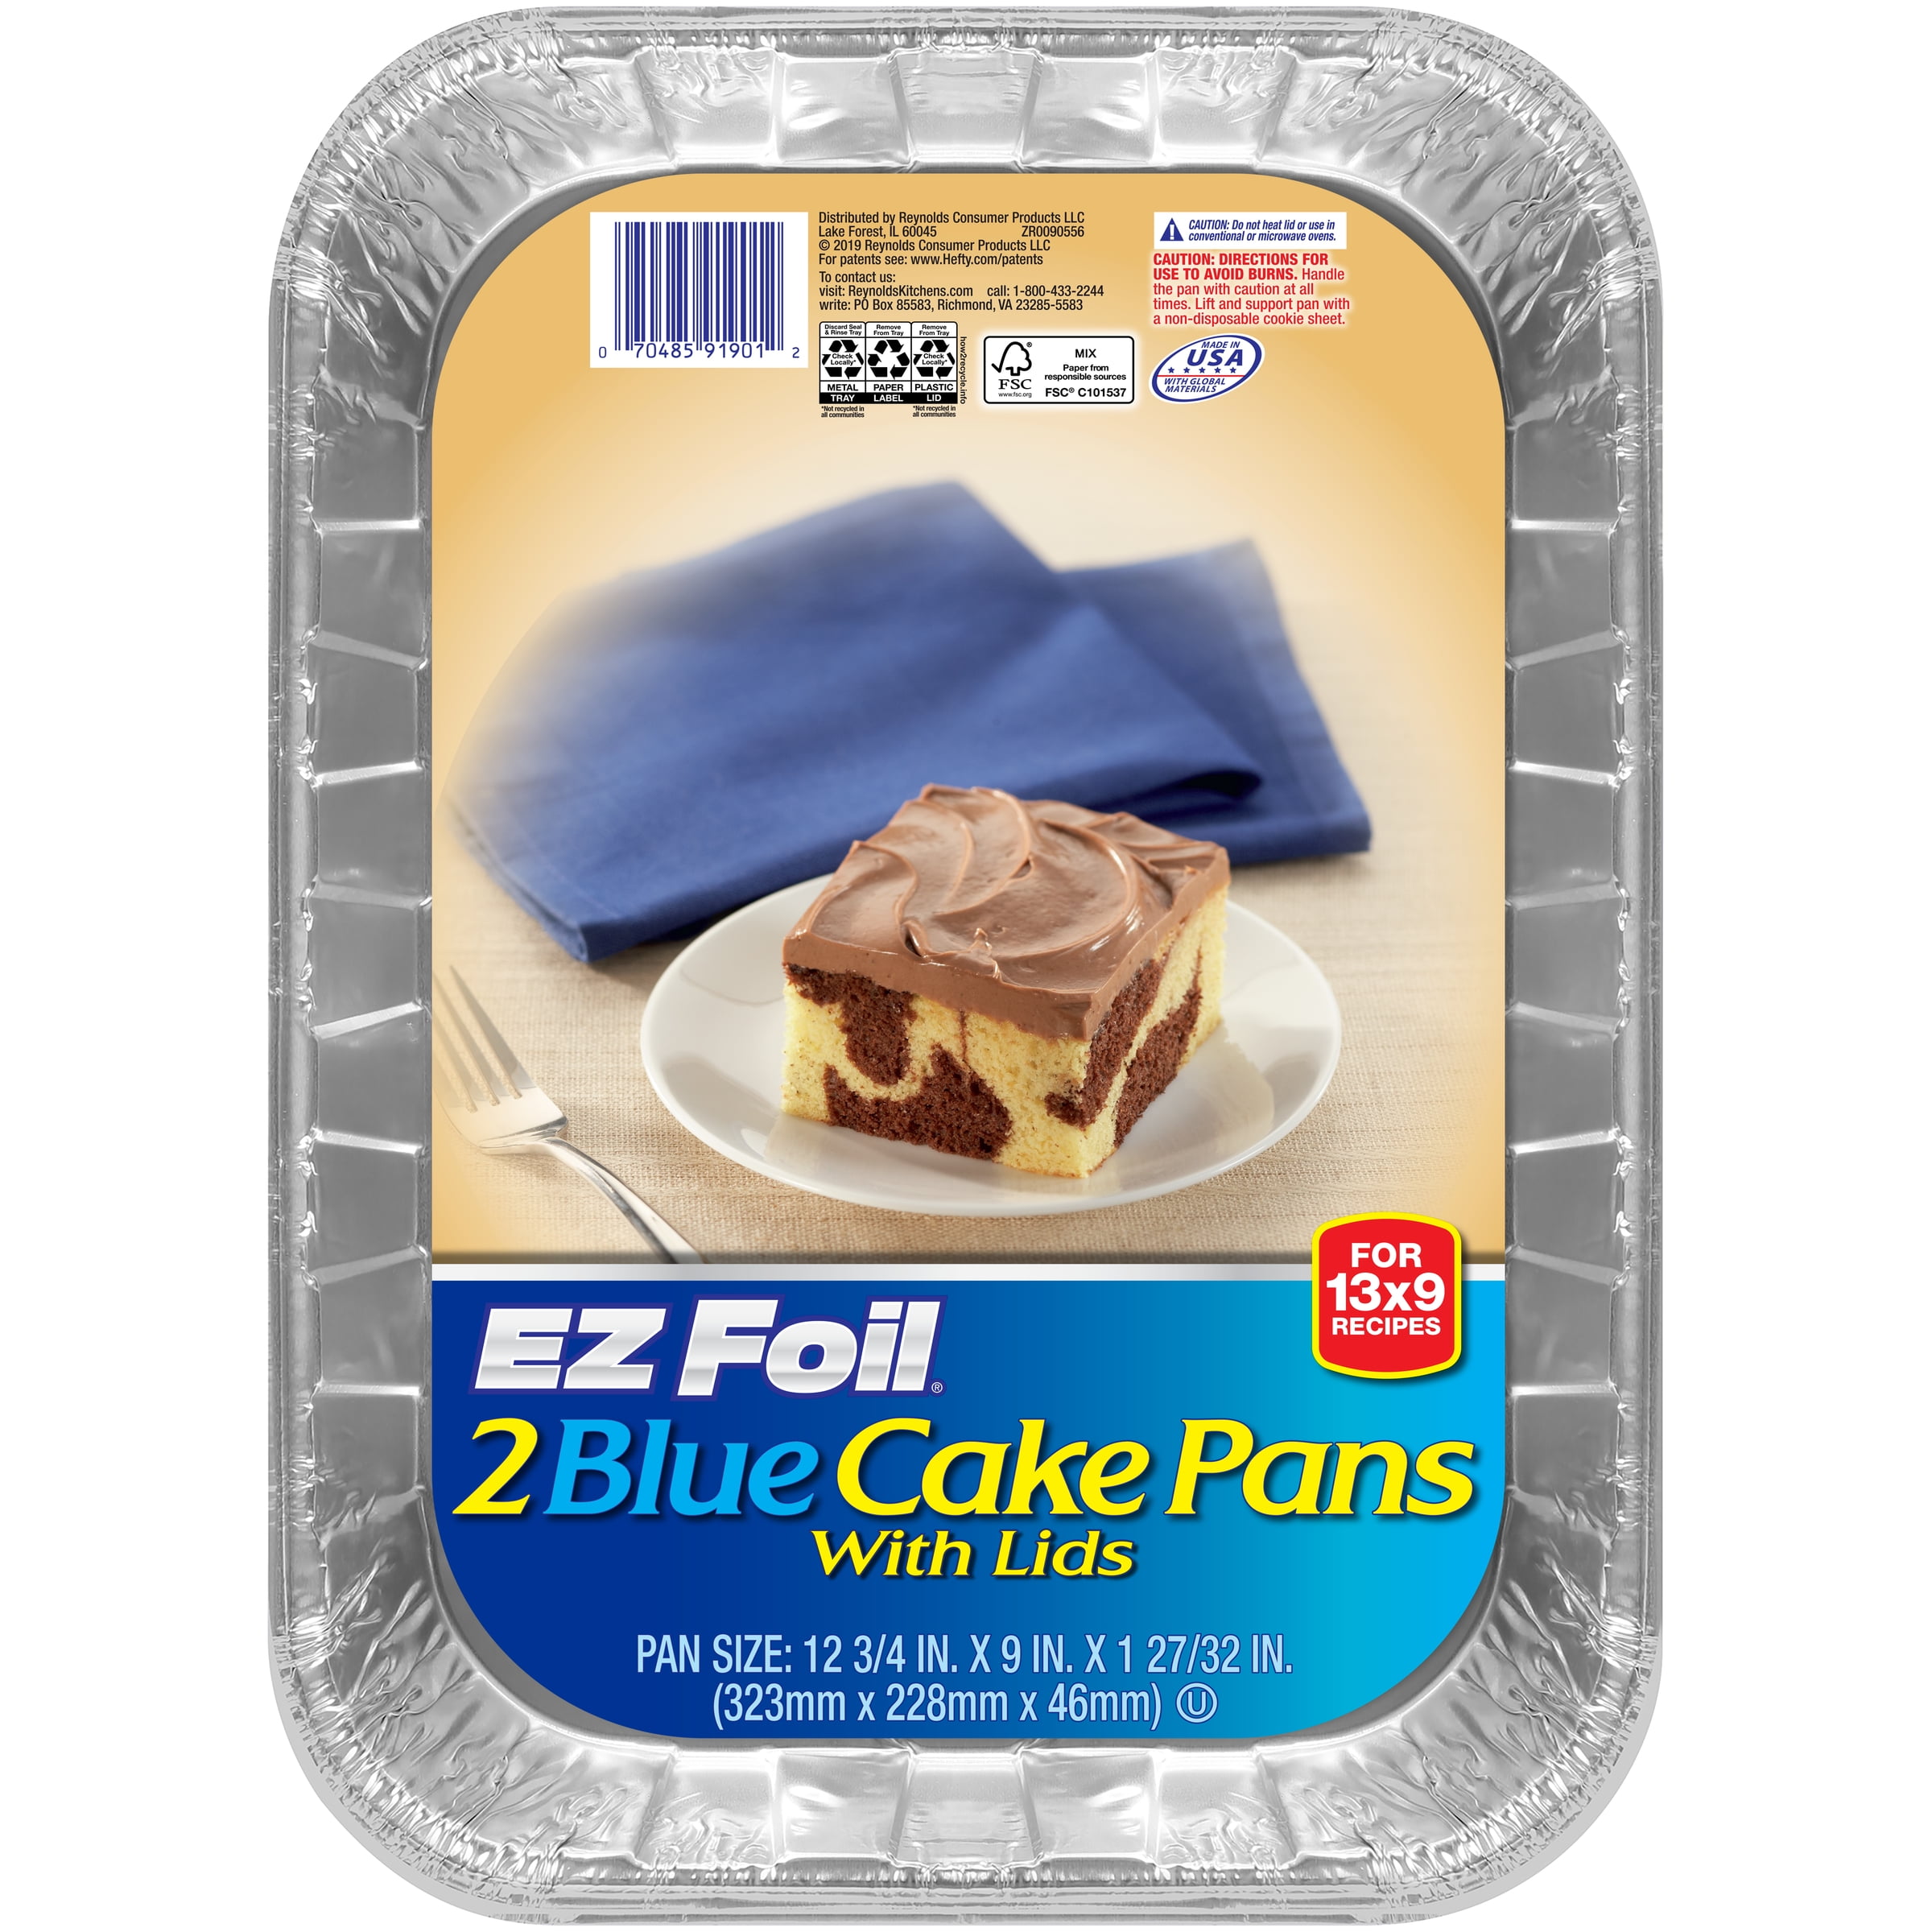 EZ Foil Cake Pans with Lids, Blue, 13 x 9 inch, 2 Count